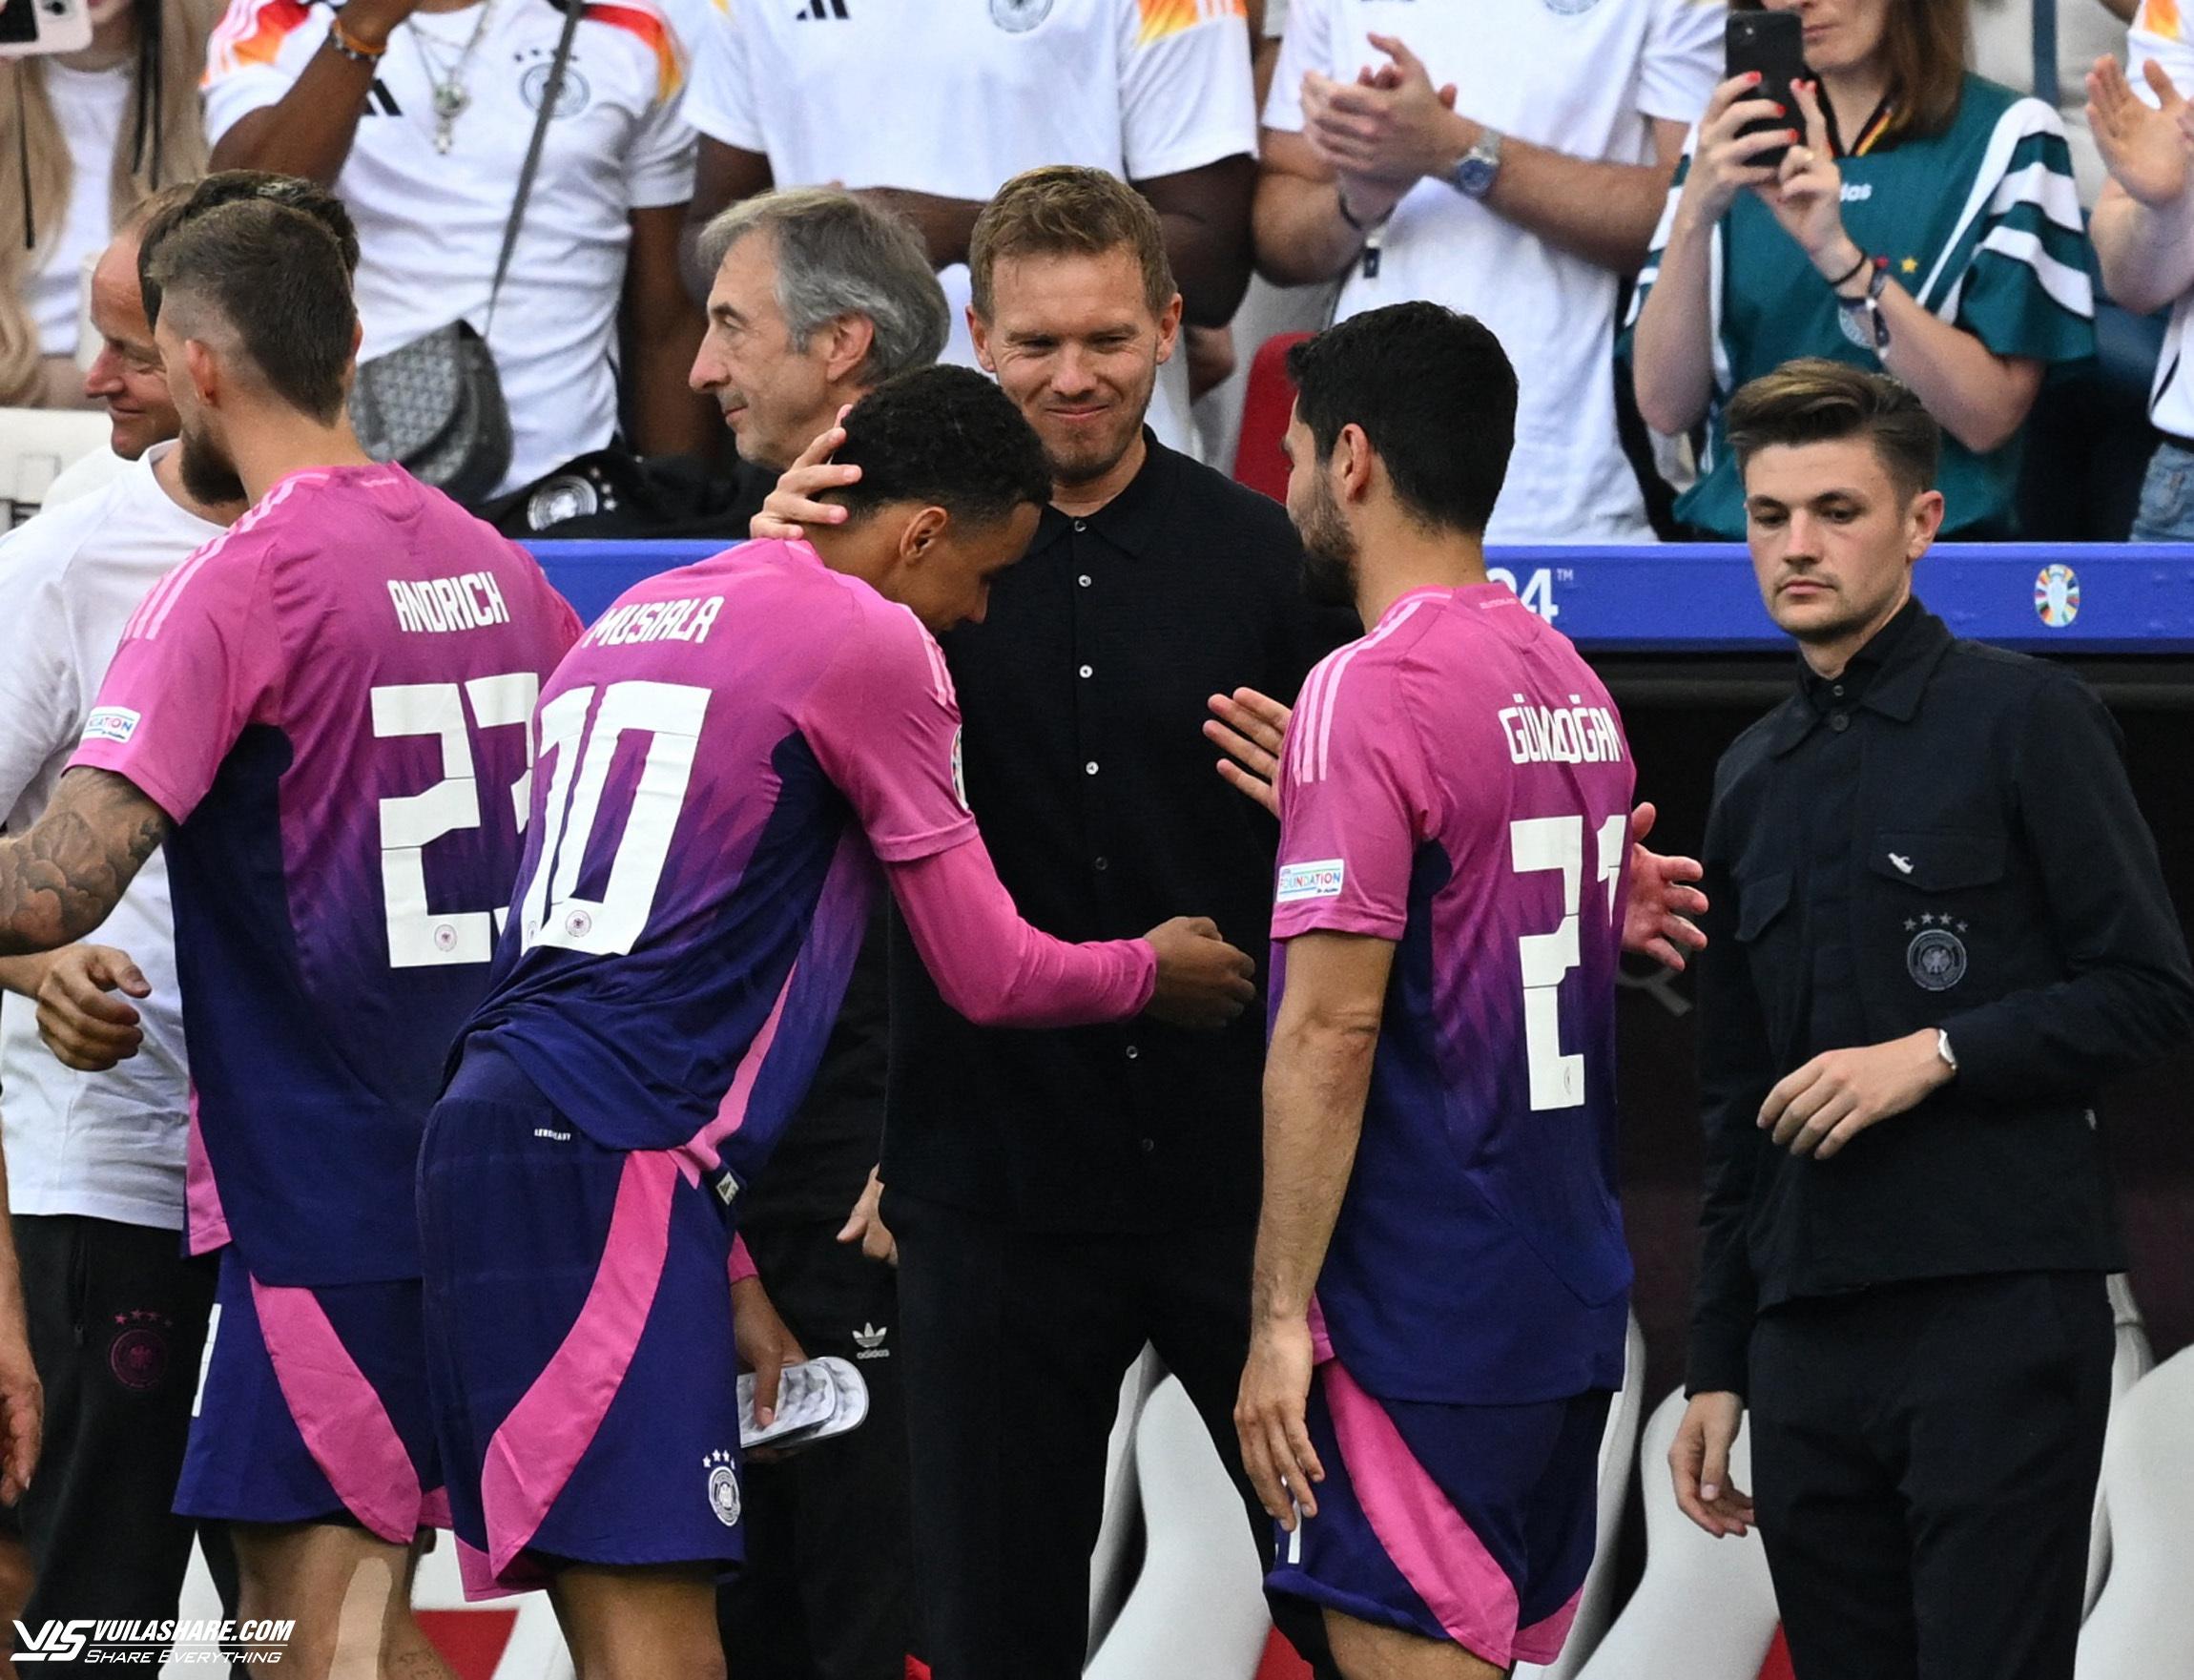 HLV đội tuyển Đức khen nức nở học trò, HLV Hungary trách trọng tài ‘tệ nhất trên sân’- Ảnh 1.